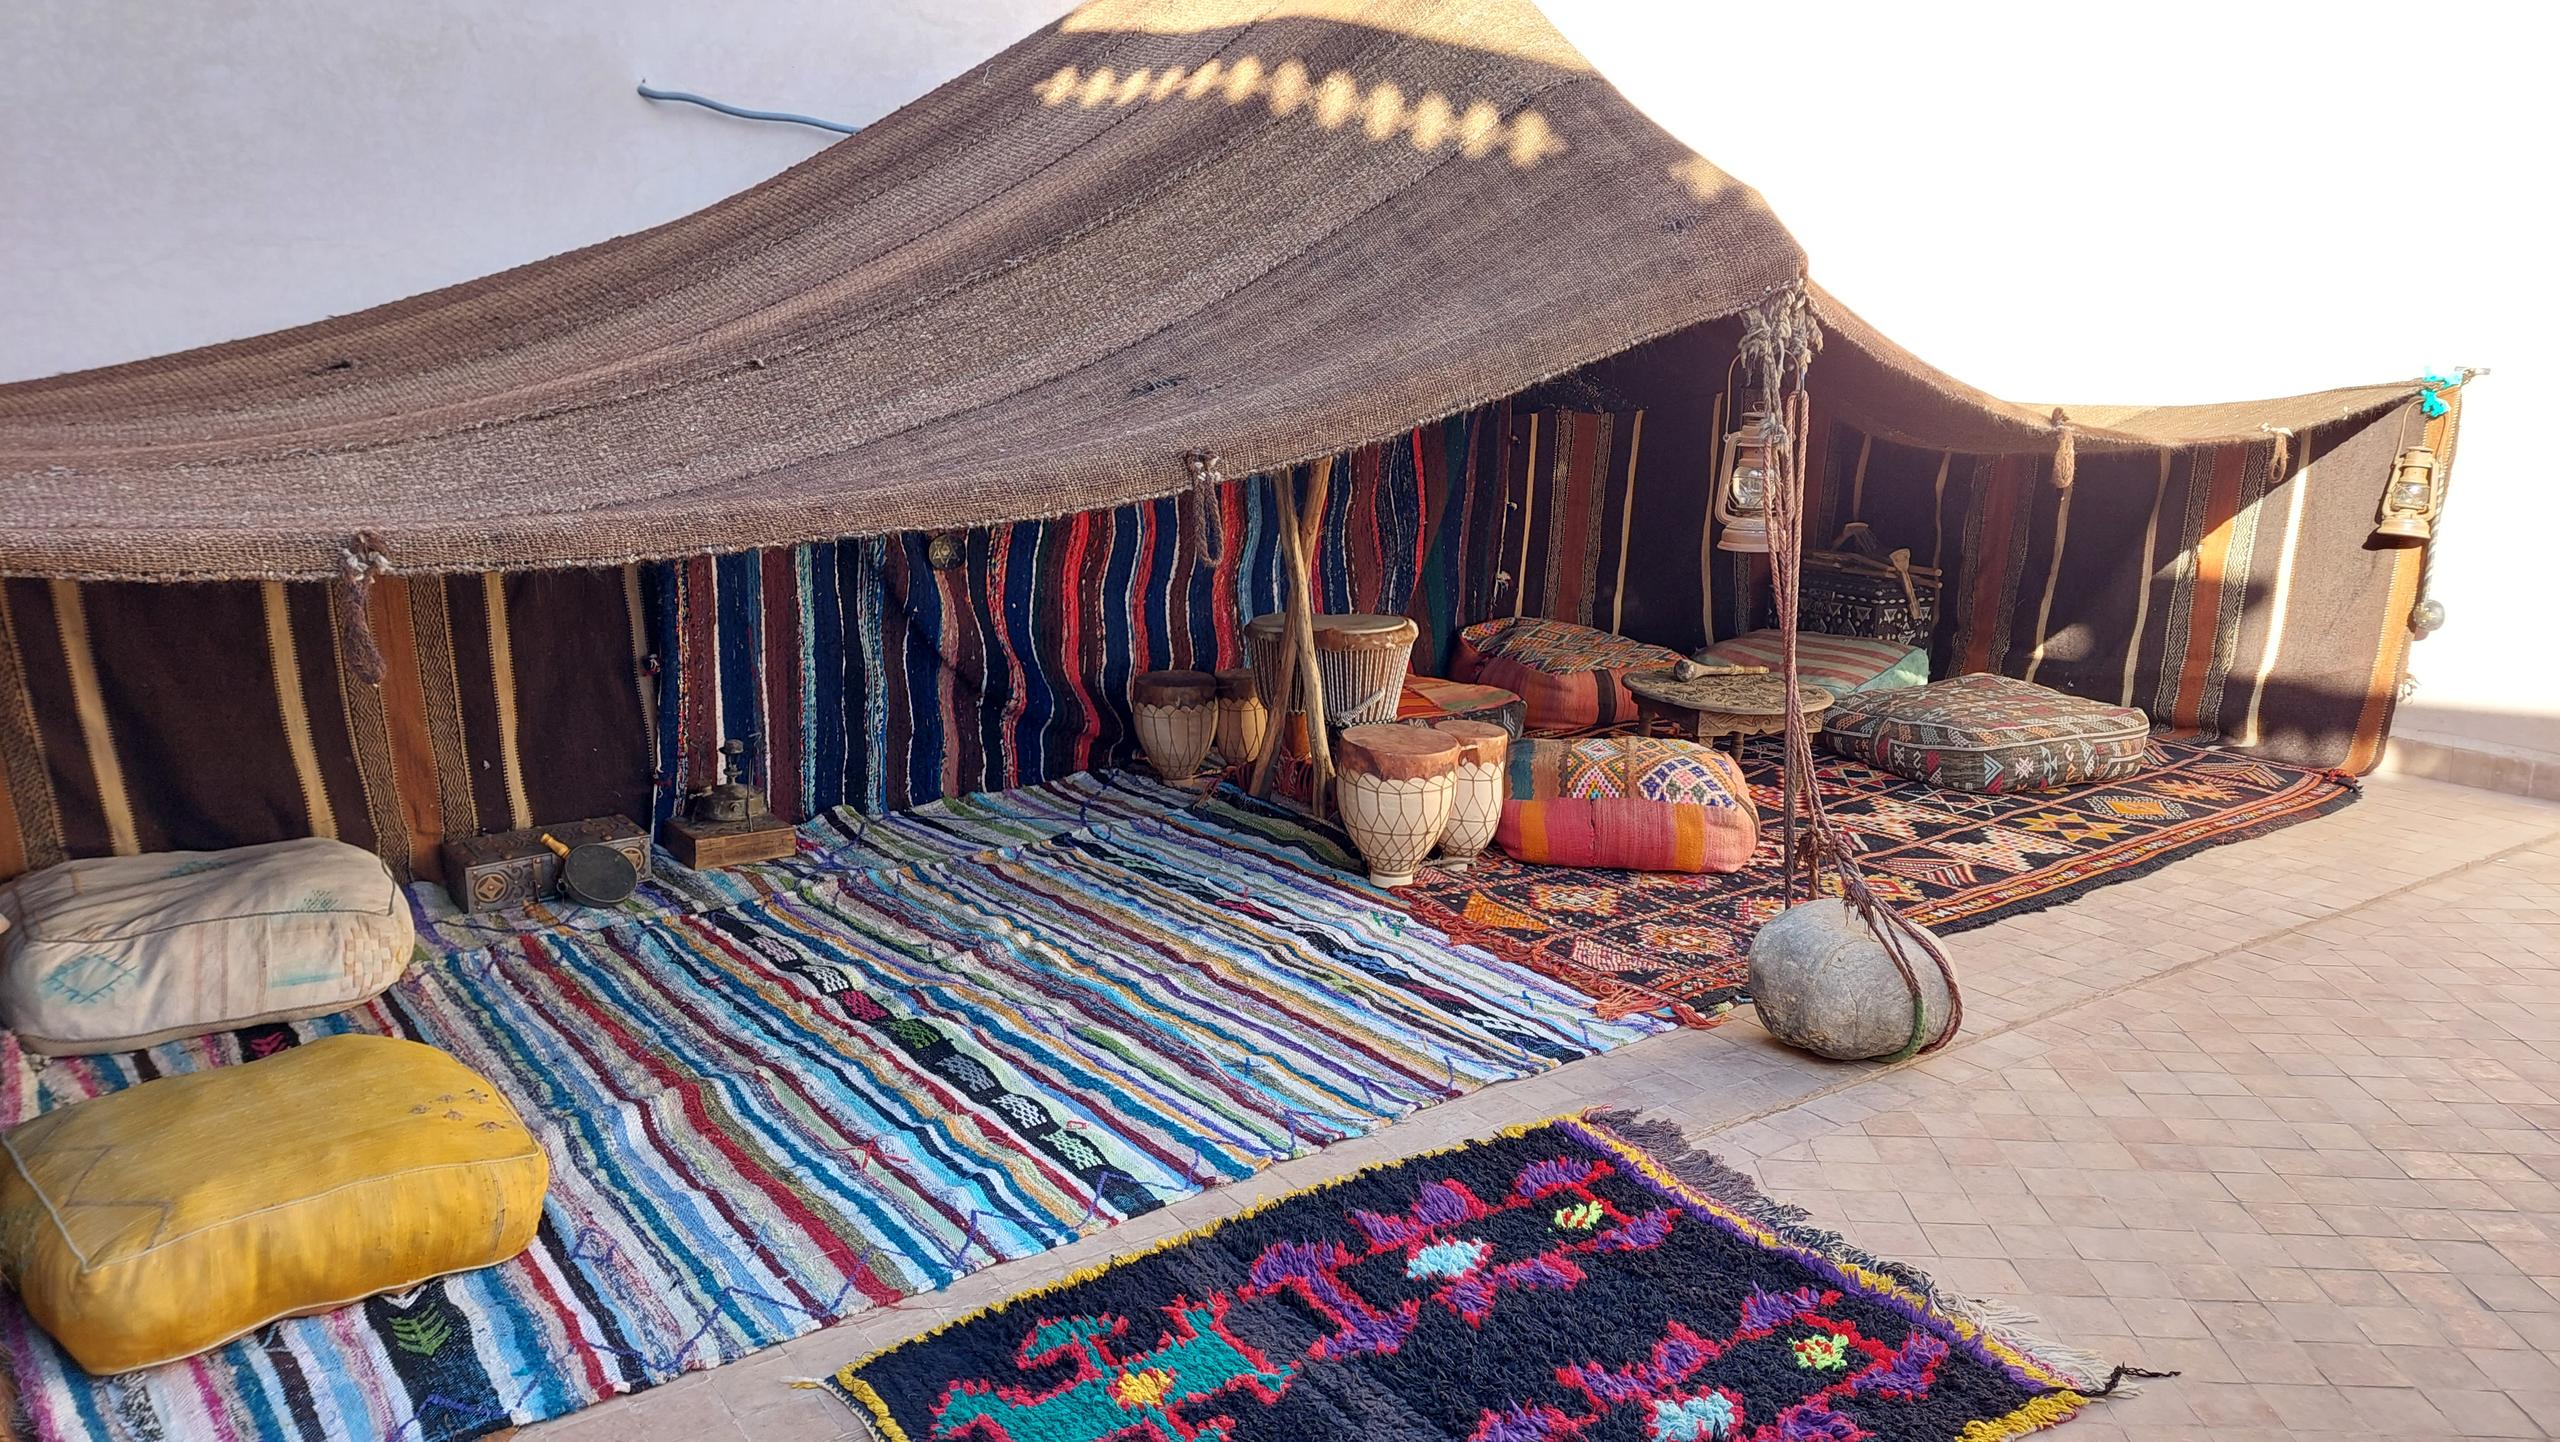 La tenda berbera